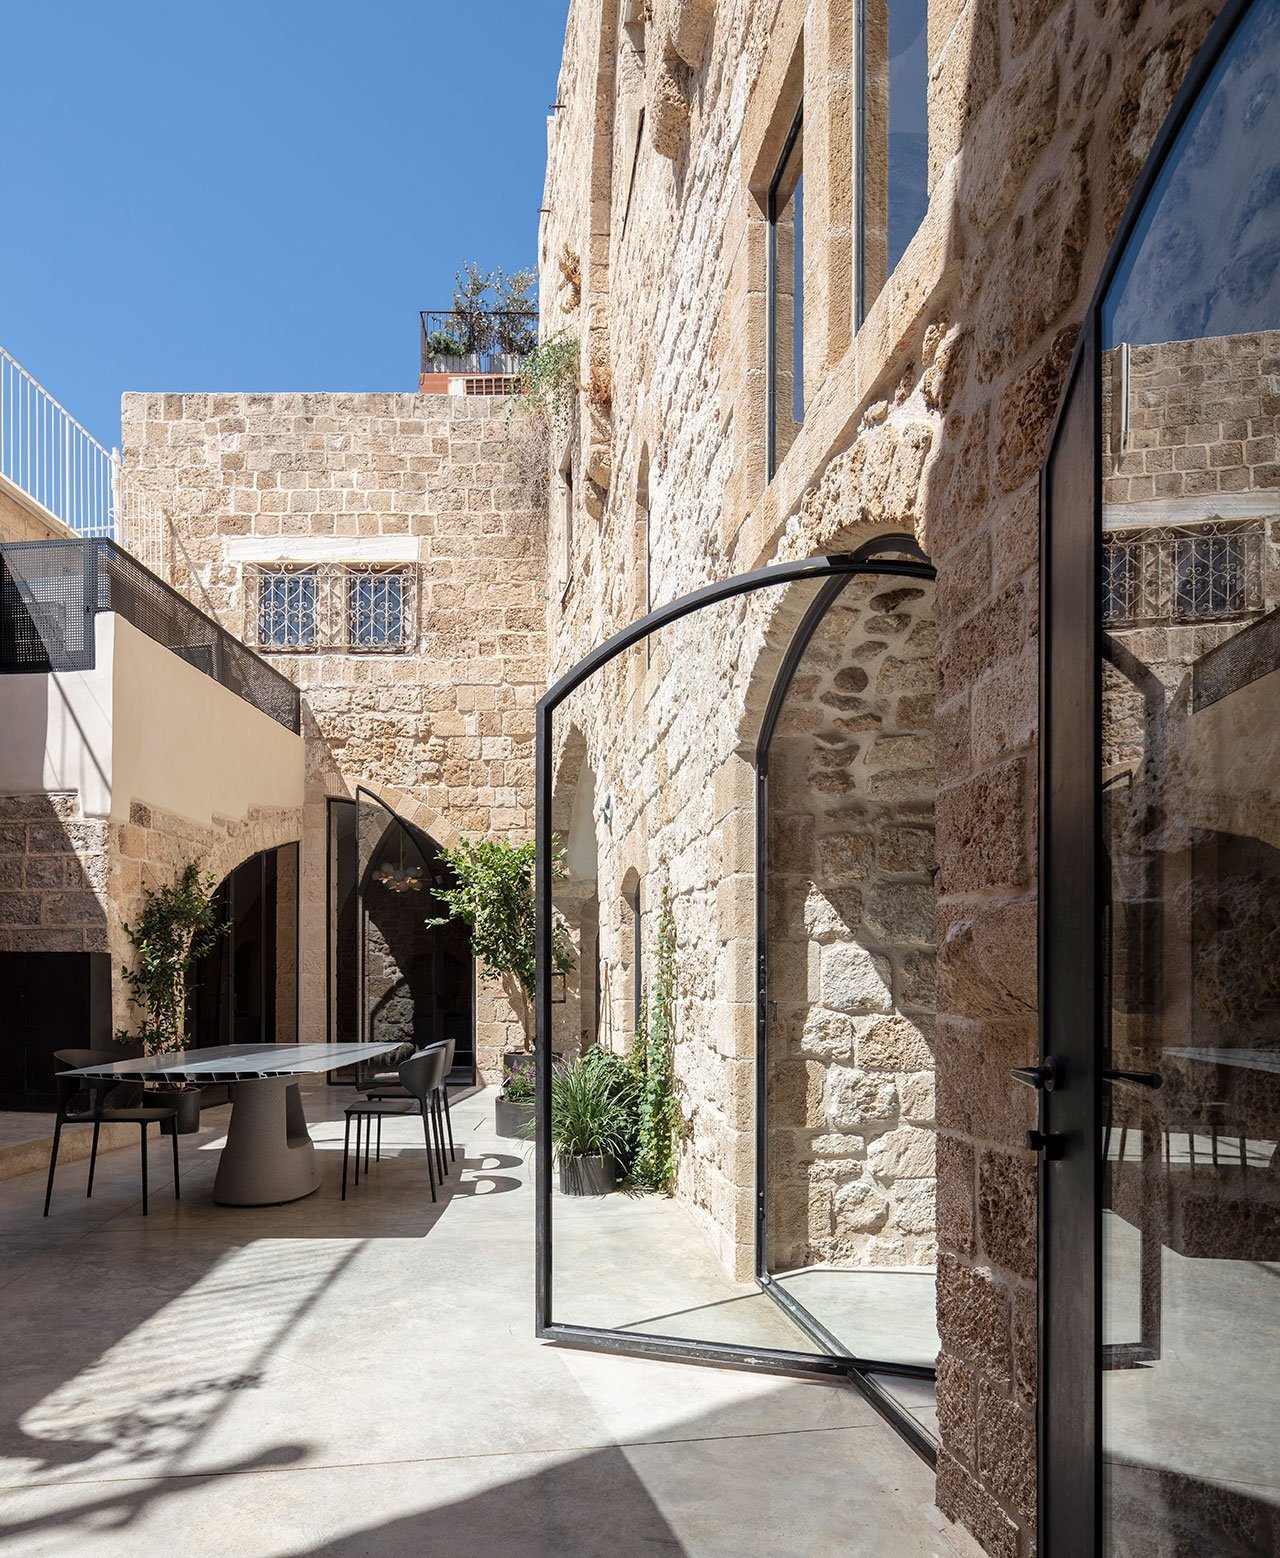 Casa moderna de piedra y ladrillo reformada en Tel Aviv por el arquitecto Pitsou Kedem patio interior